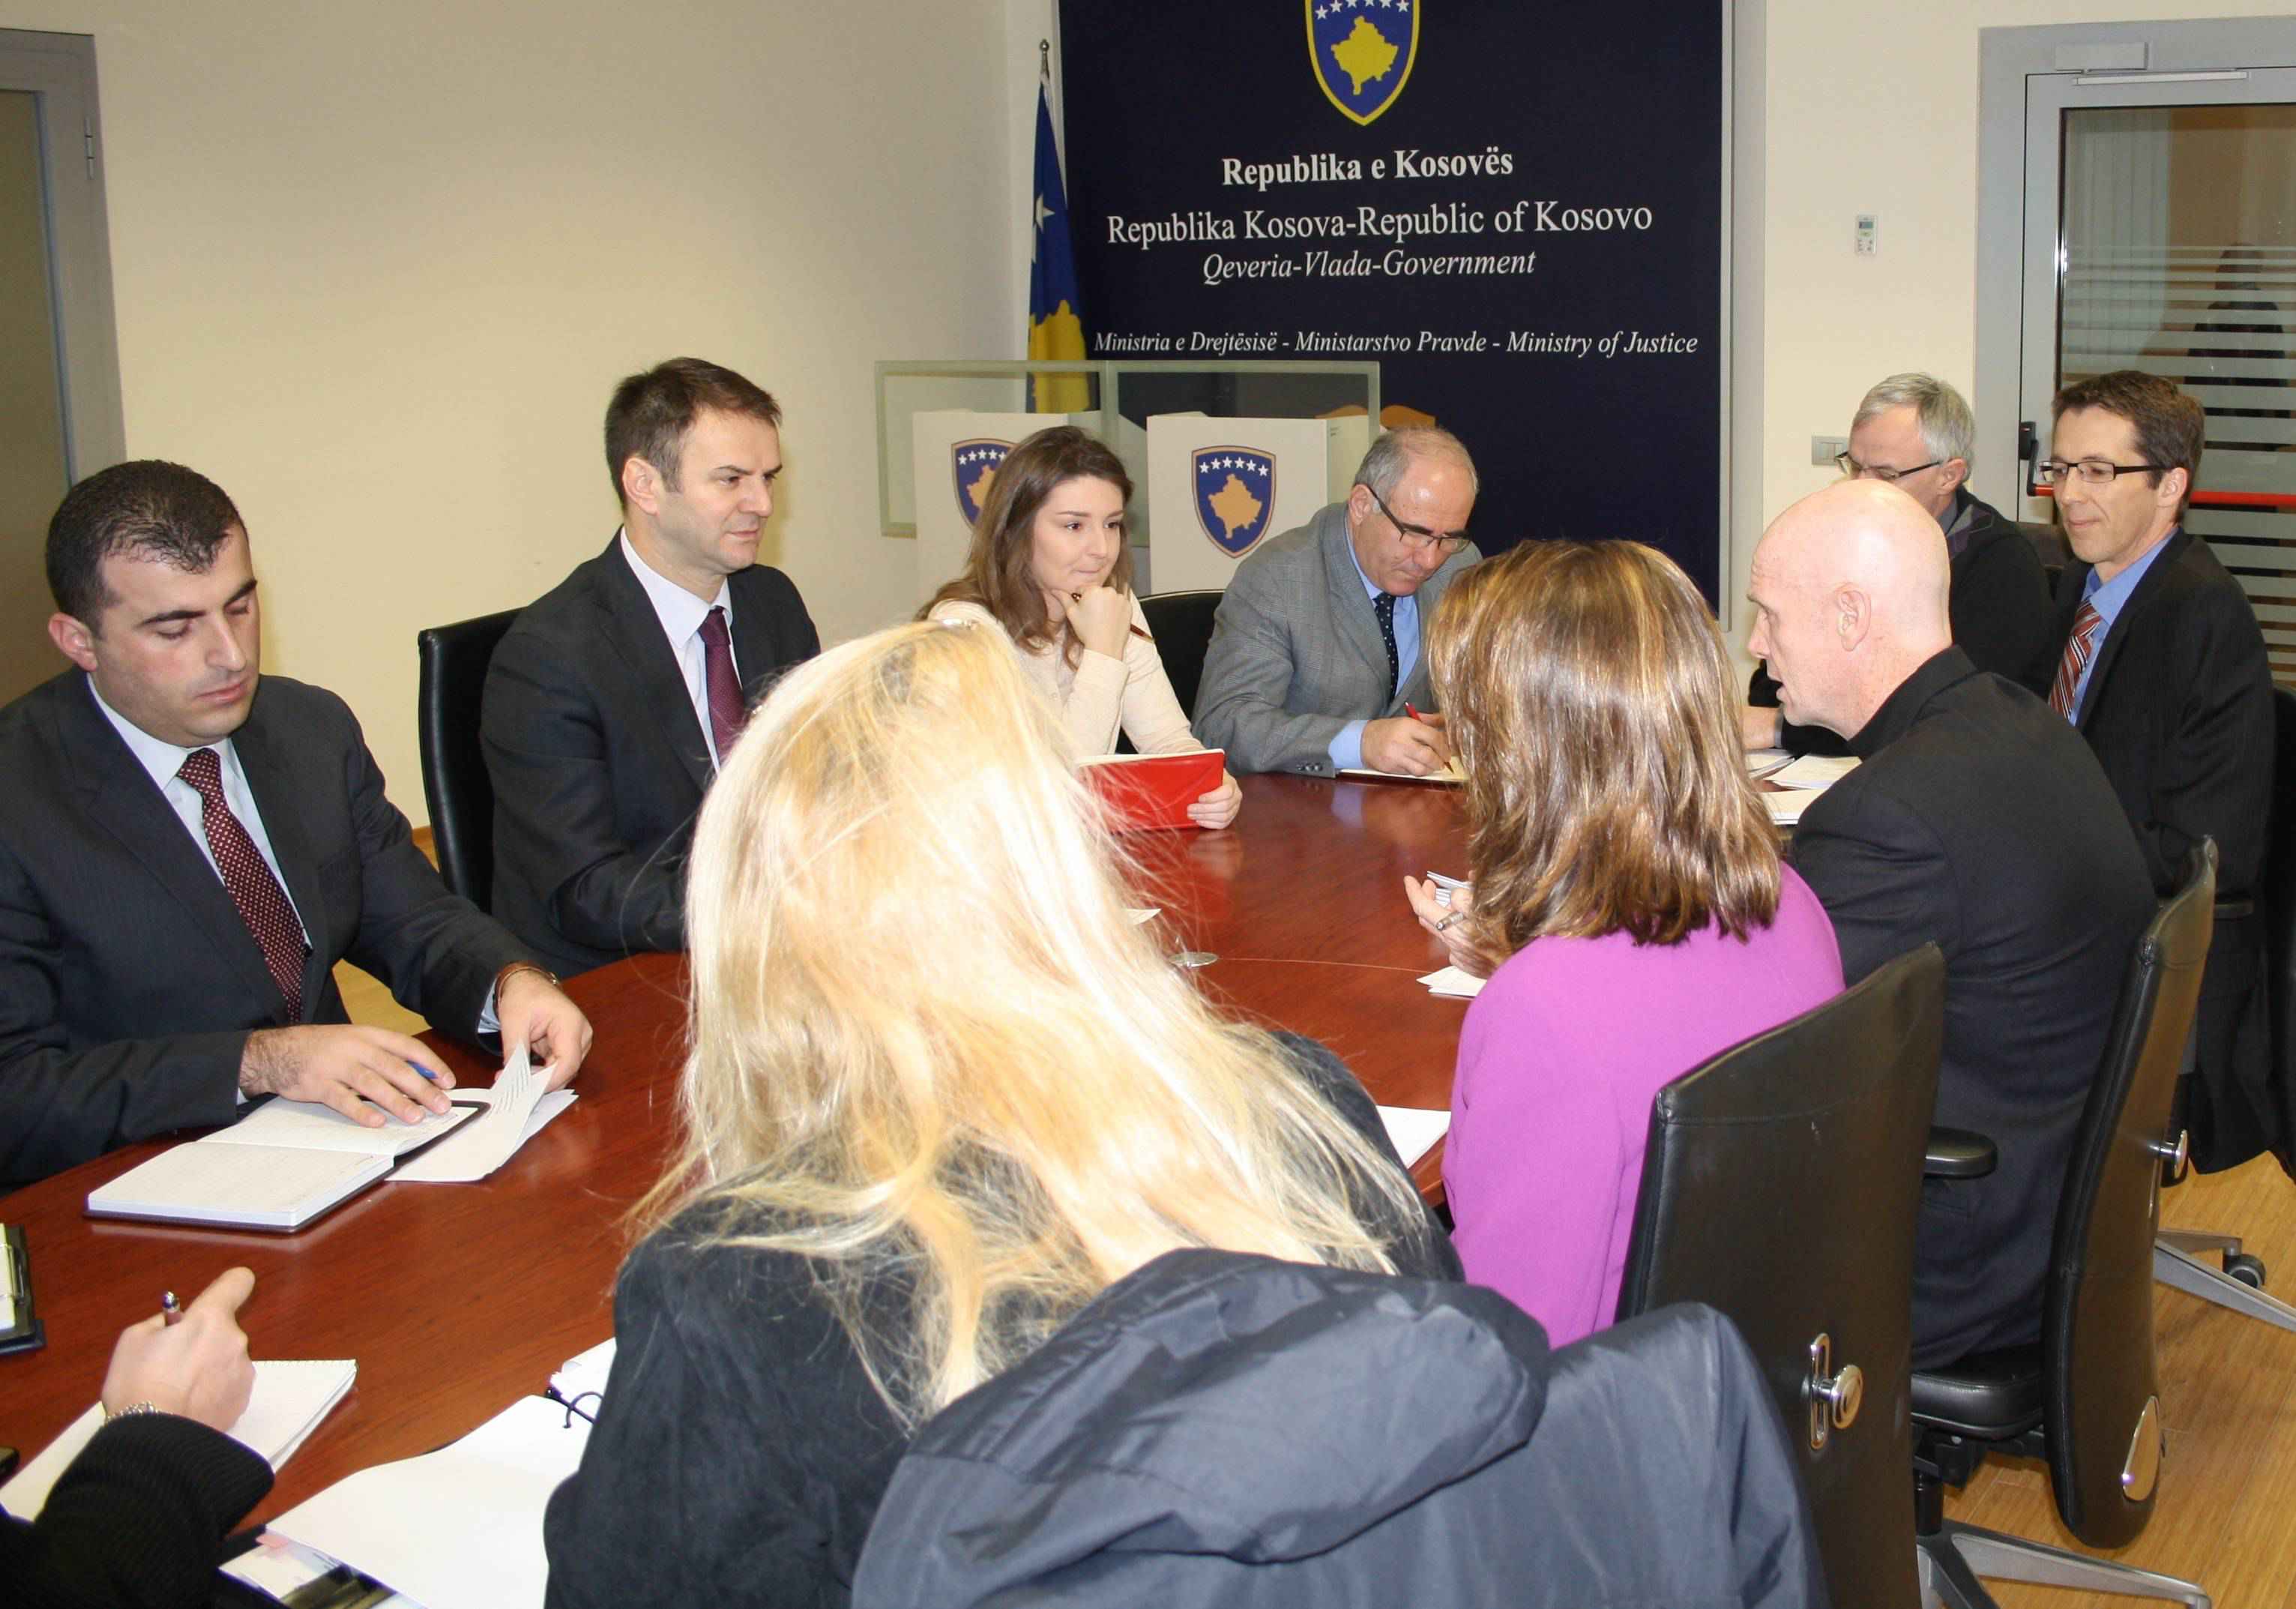 USAID-i vazhdon mbështetjen për Kosovën përmes Qeverisë